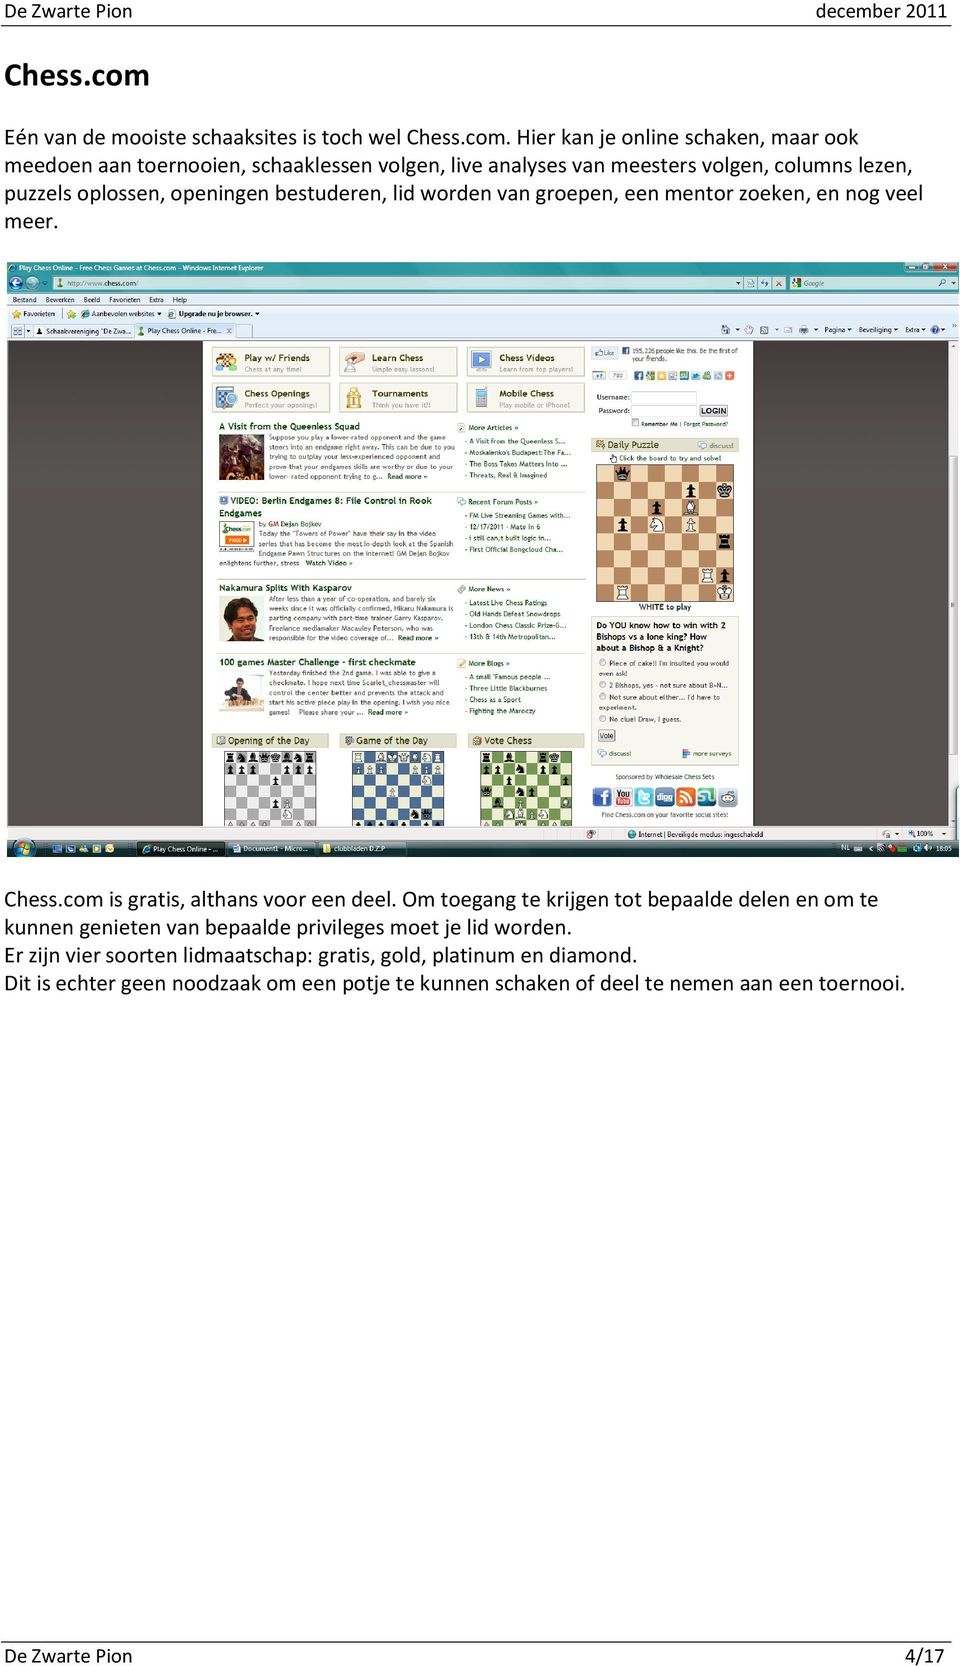 Hier kan je online schaken, maar ook meedoen aan toernooien, schaaklessen volgen, live analyses van meesters volgen, columns lezen, puzzels oplossen,